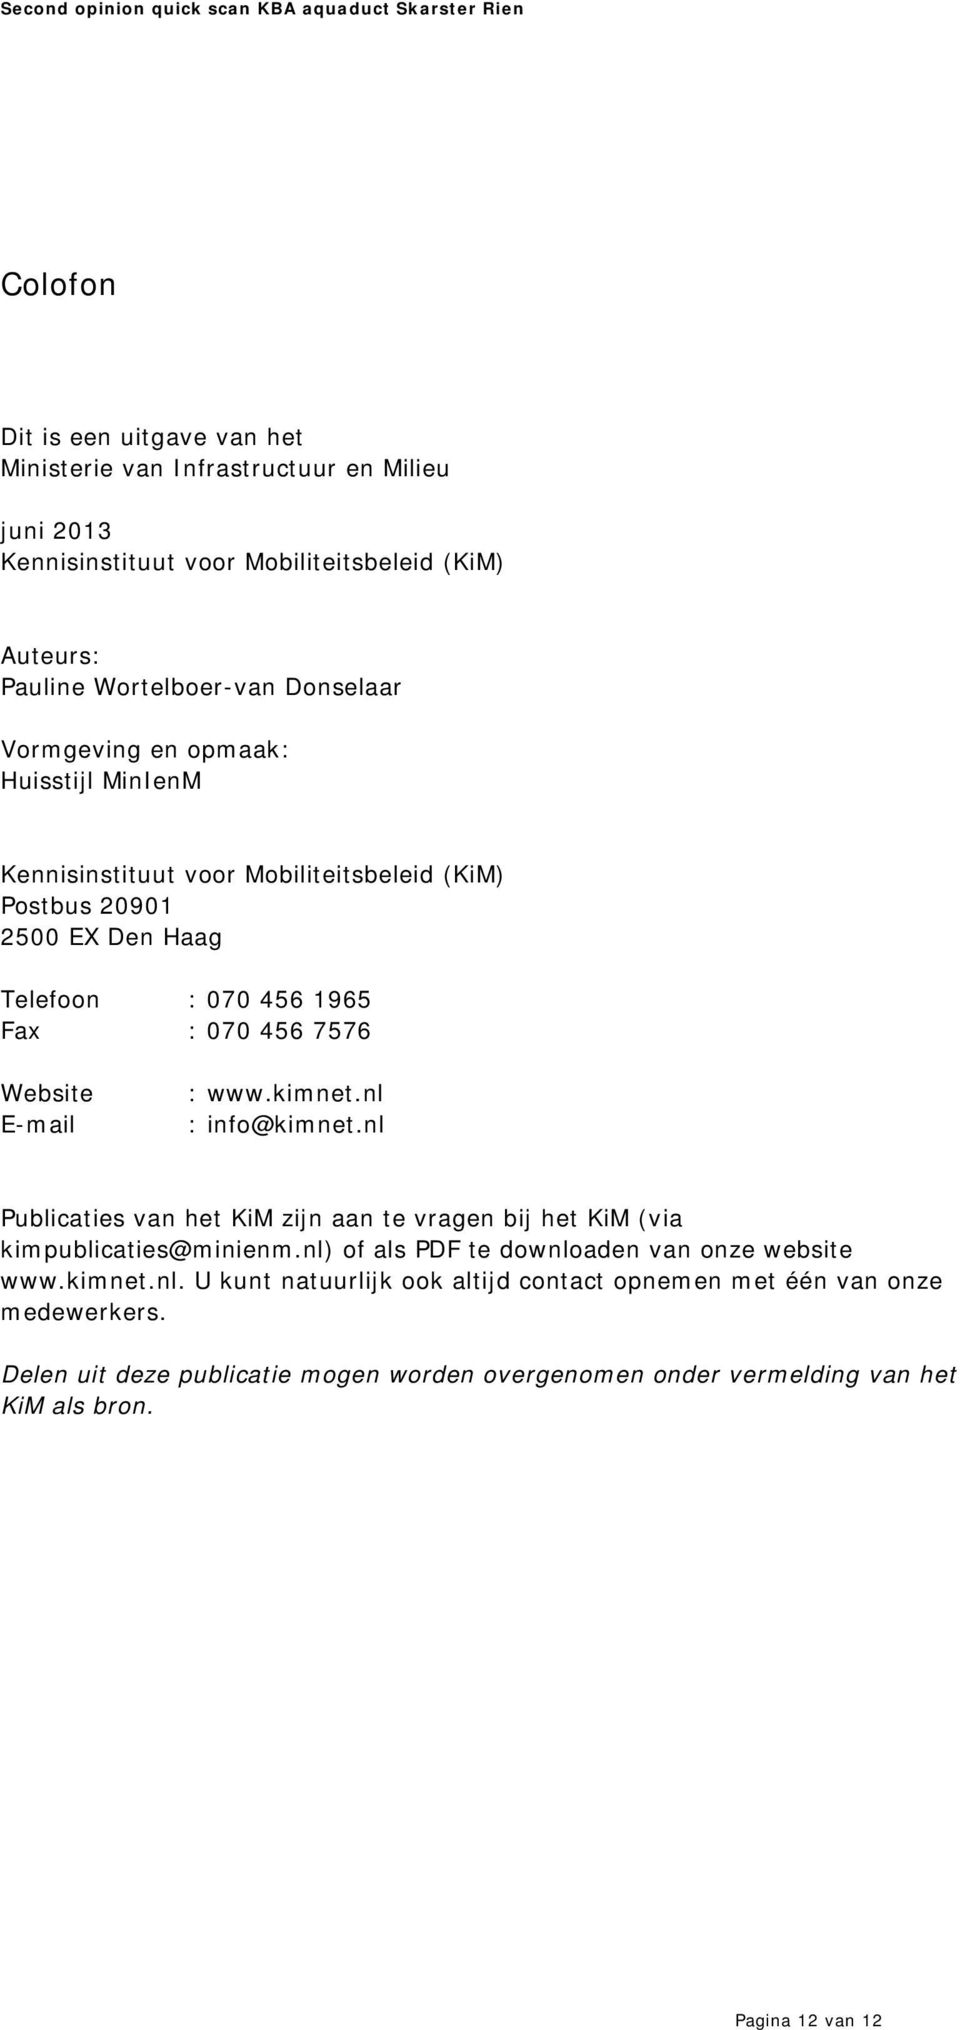 www.kimnet.nl : info@kimnet.nl Publicaties van het KiM zijn aan te vragen bij het KiM (via kimpublicaties@minienm.nl) of als PDF te downloaden van onze website www.kimnet.nl. U kunt natuurlijk ook altijd contact opnemen met één van onze medewerkers.